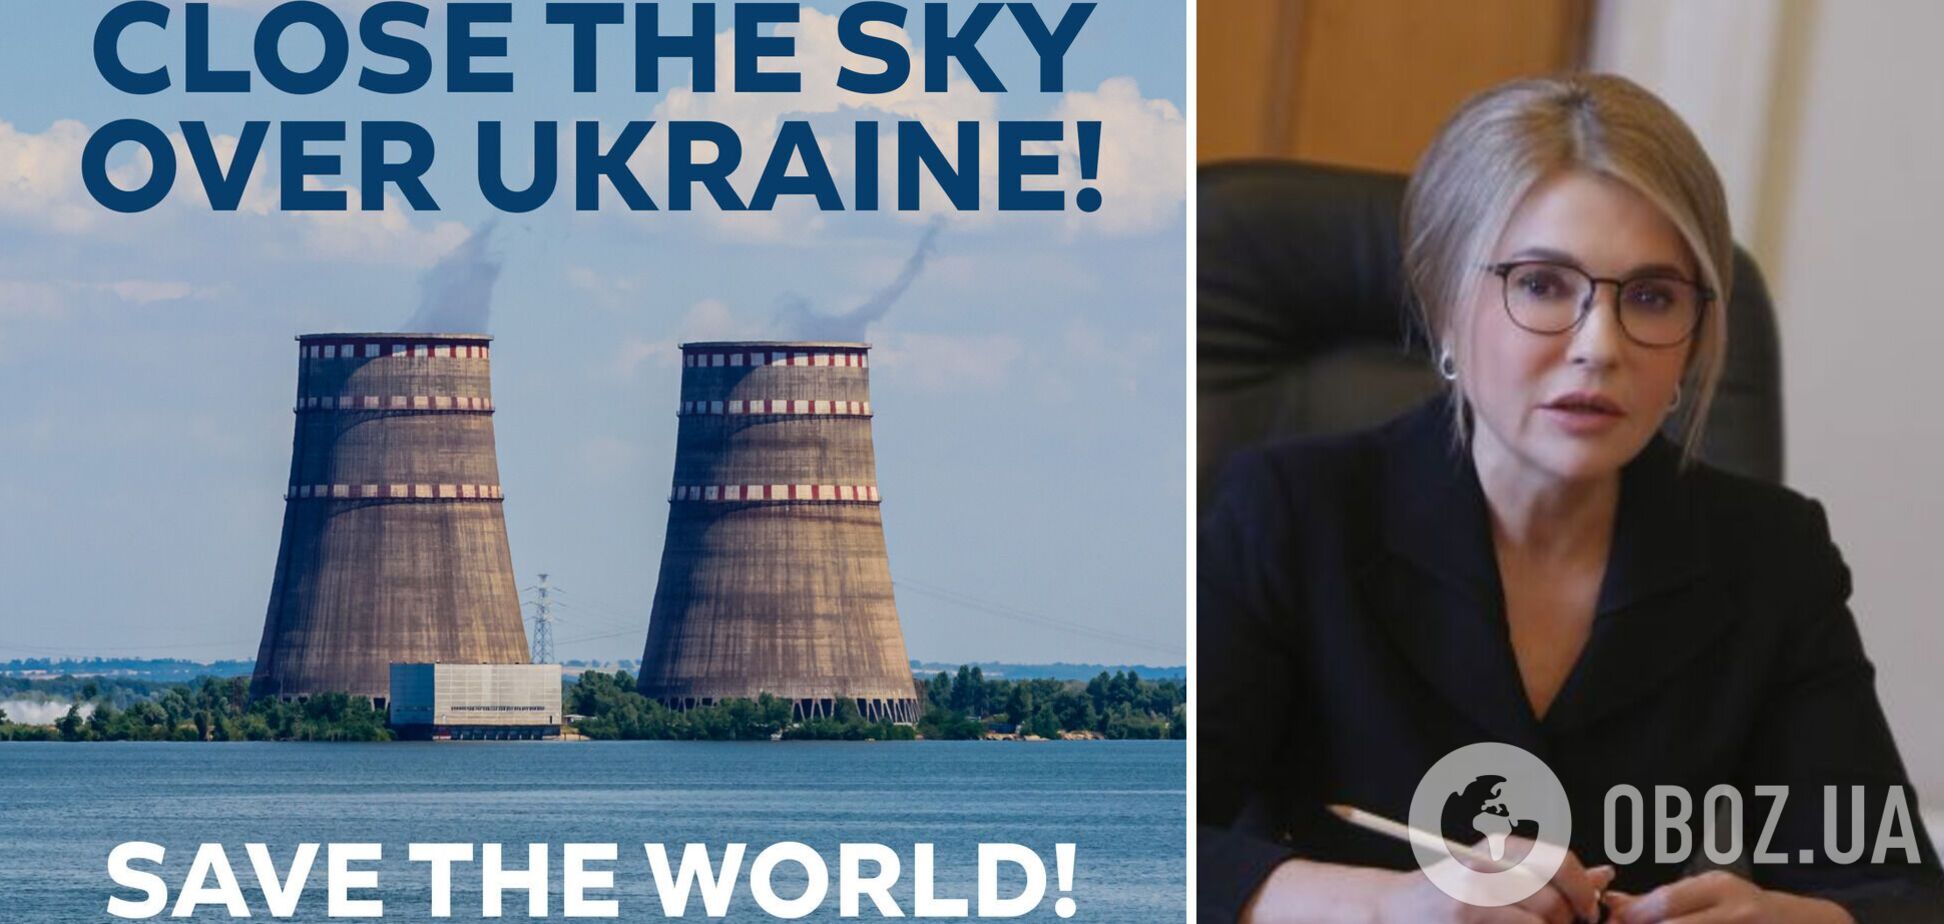 Украина должна войти в зиму с закрытым небом над нашими ТЭЦ и АЭС, – Юлия Тимошенко